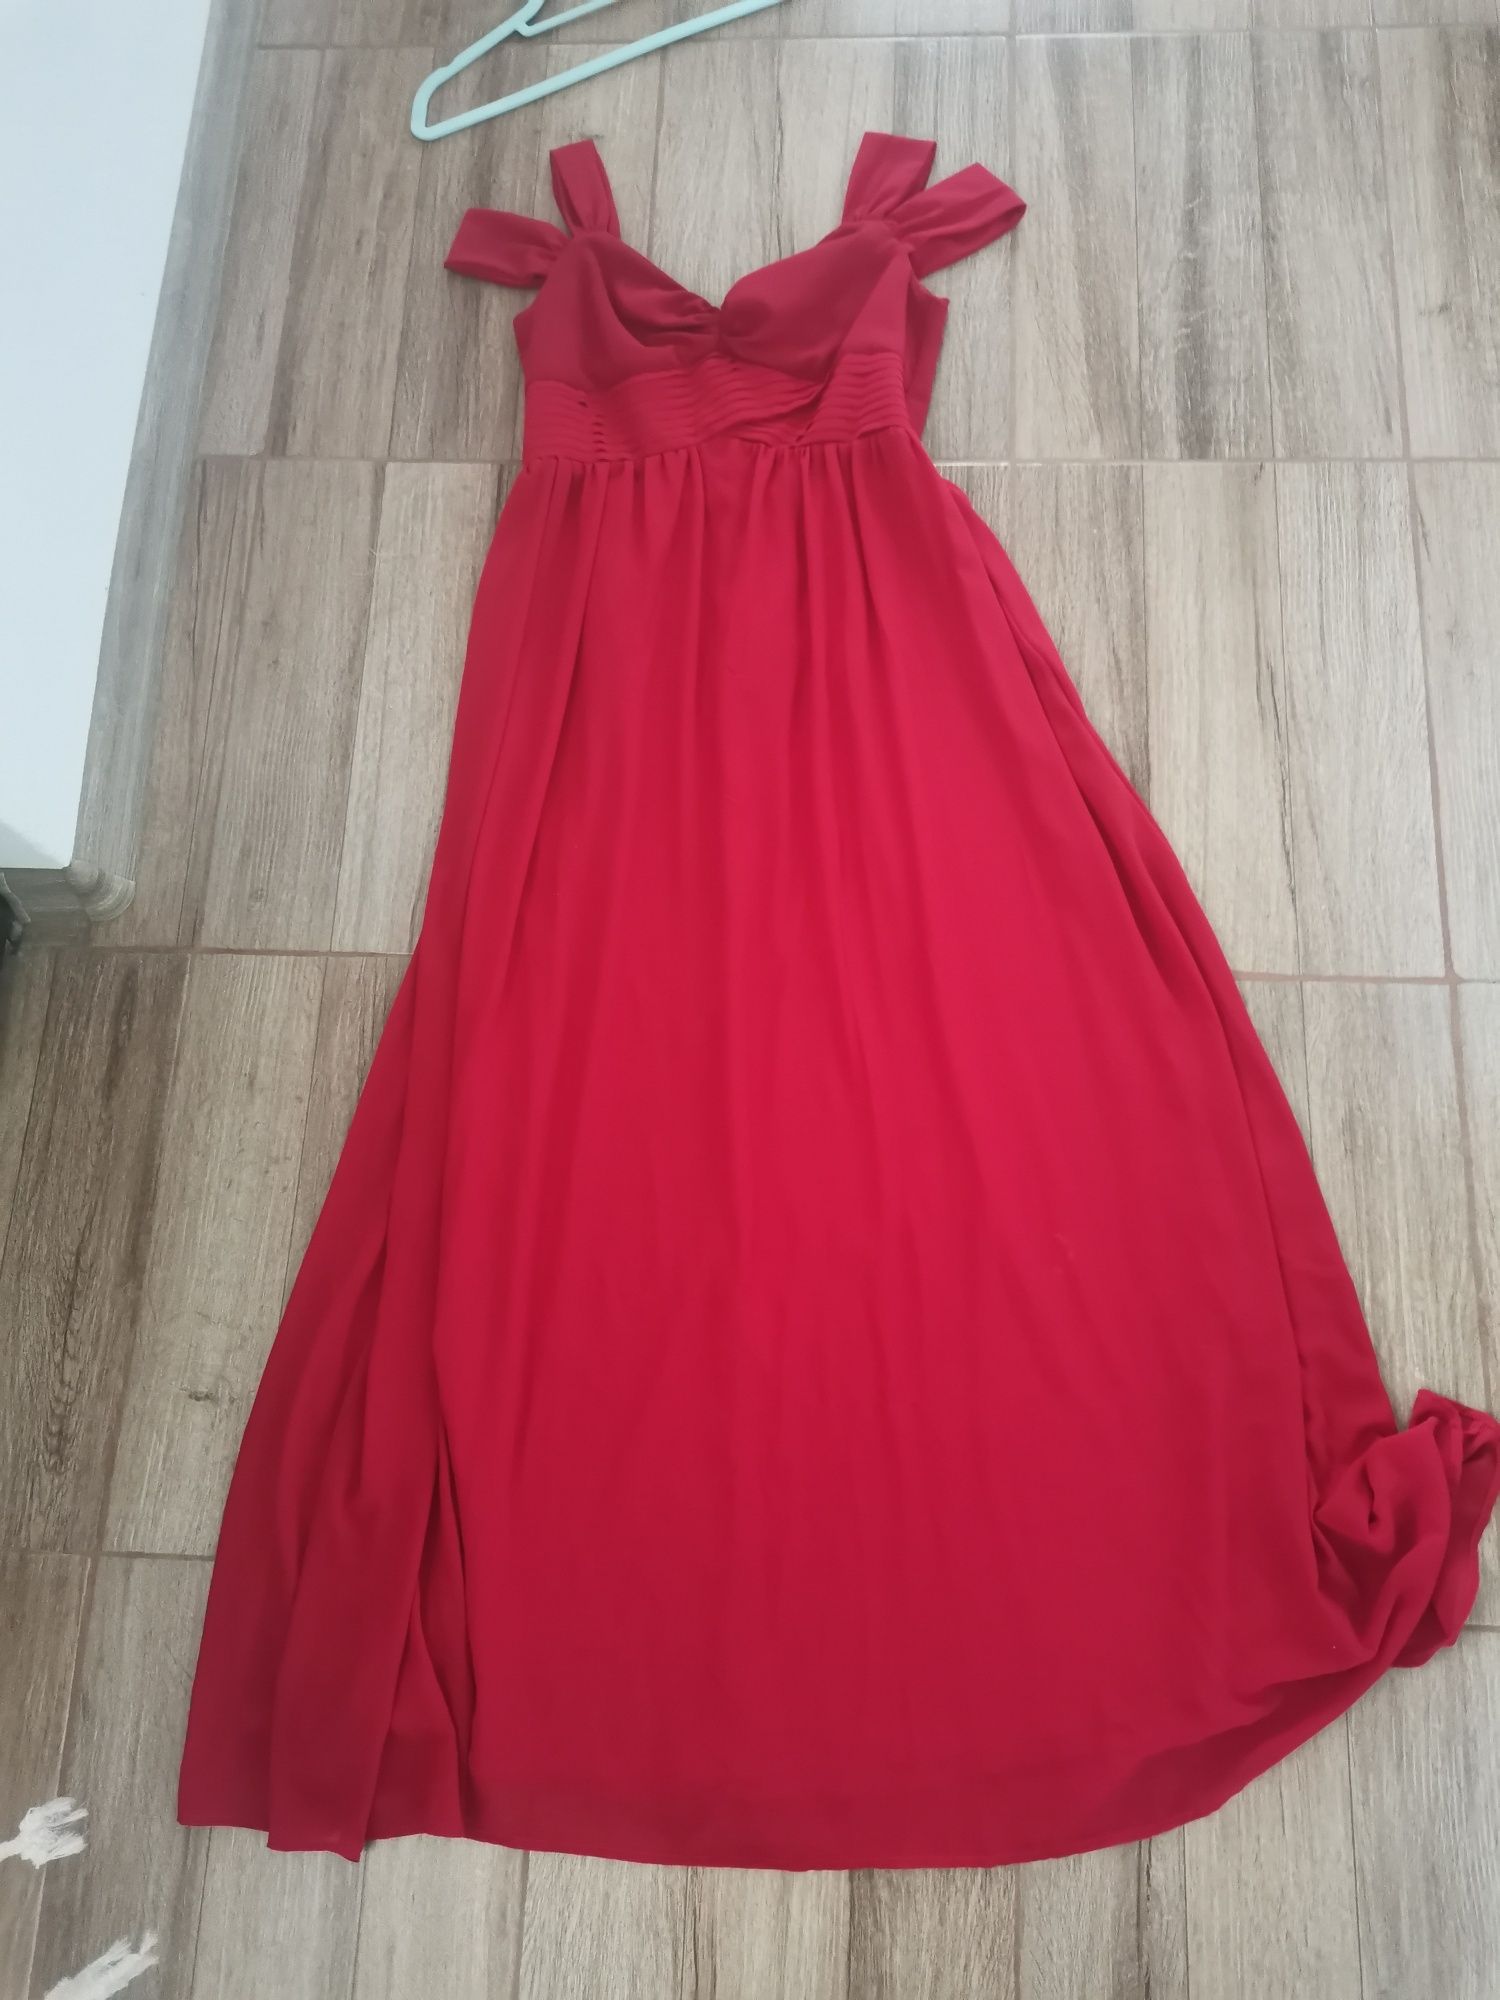 Vând rochie roșie lunga